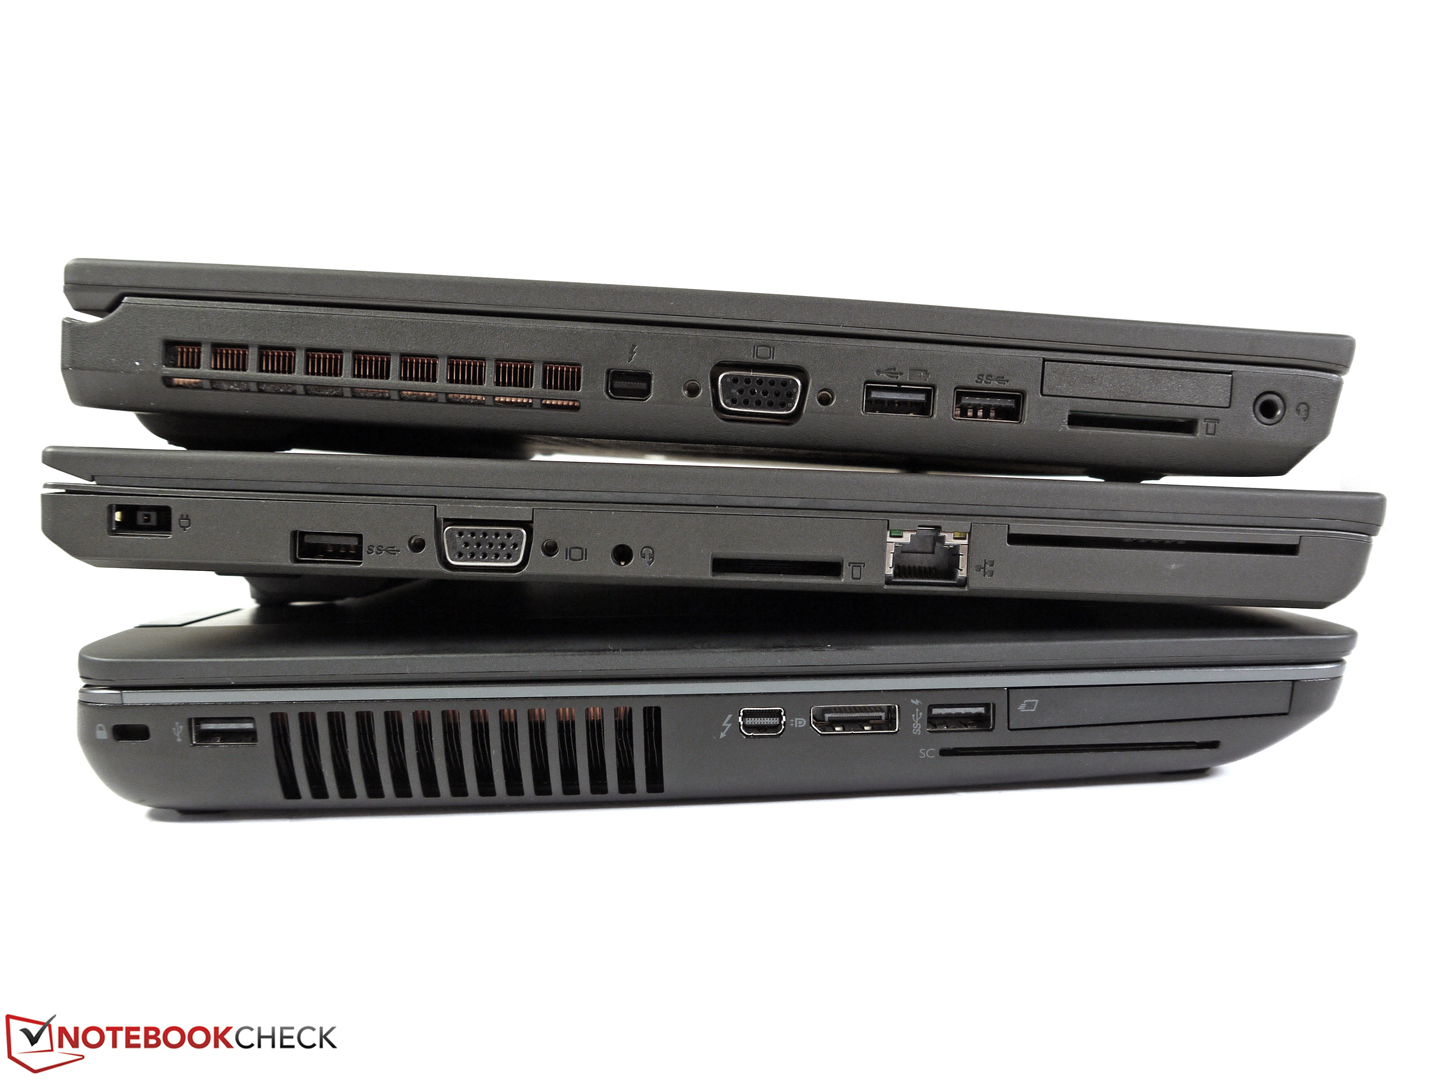 Lenovo ThinkPad W550s 系列 - Notebookcheck